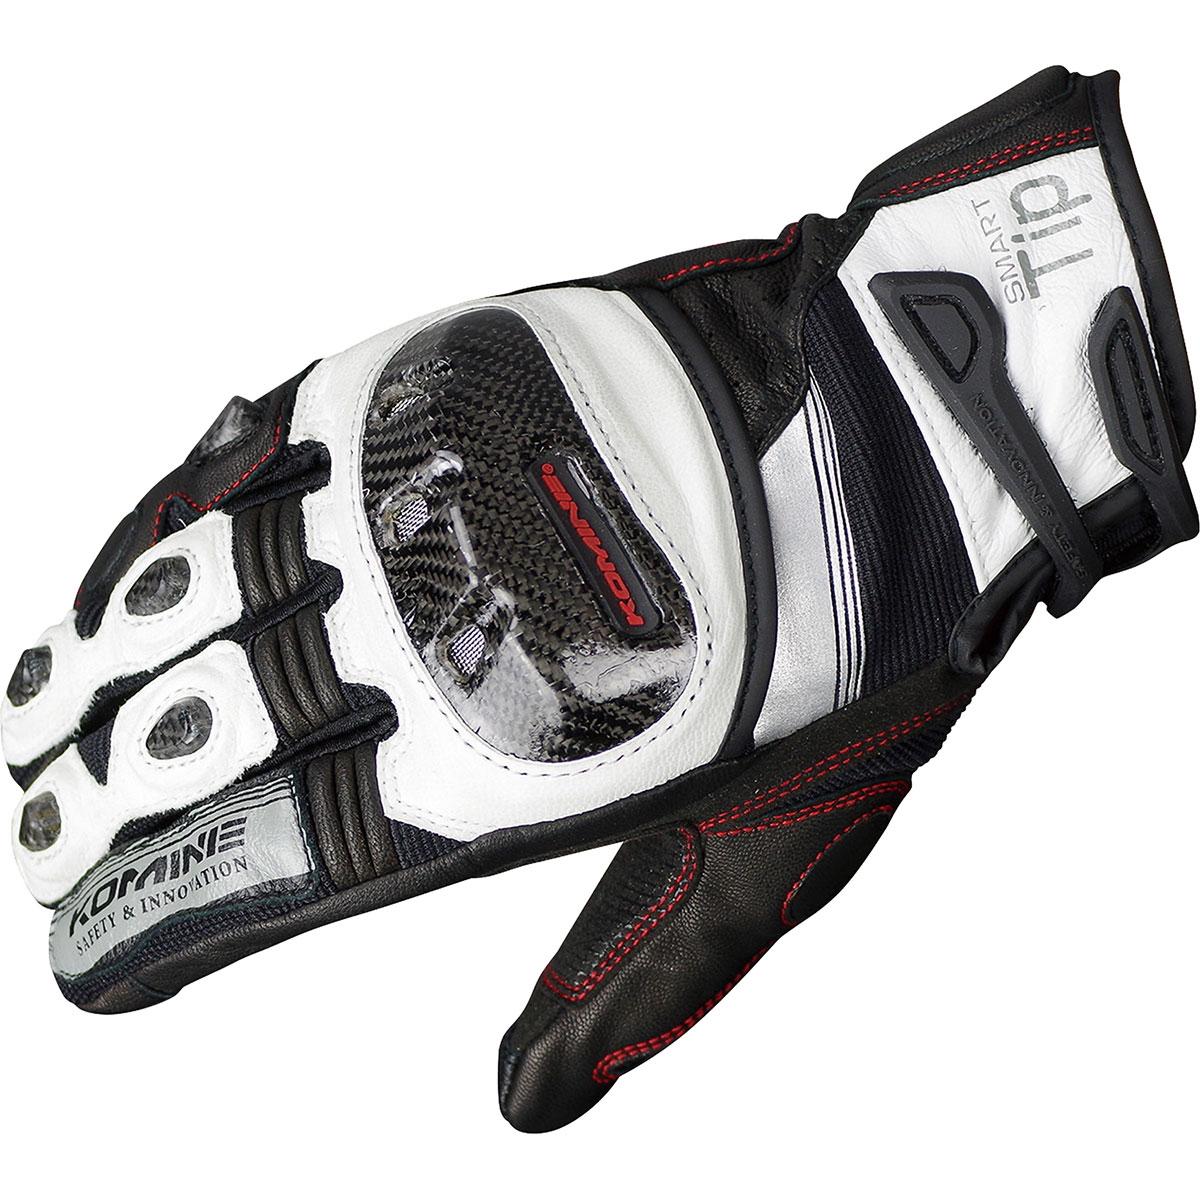 コミネ (Komine) バイク用 グローブ Gloves GK-193 プロテクトレザーメッシュグローブ-グレン ホワイト ブラック 白 黒 Mサイズ 06-193/WH/BK/M